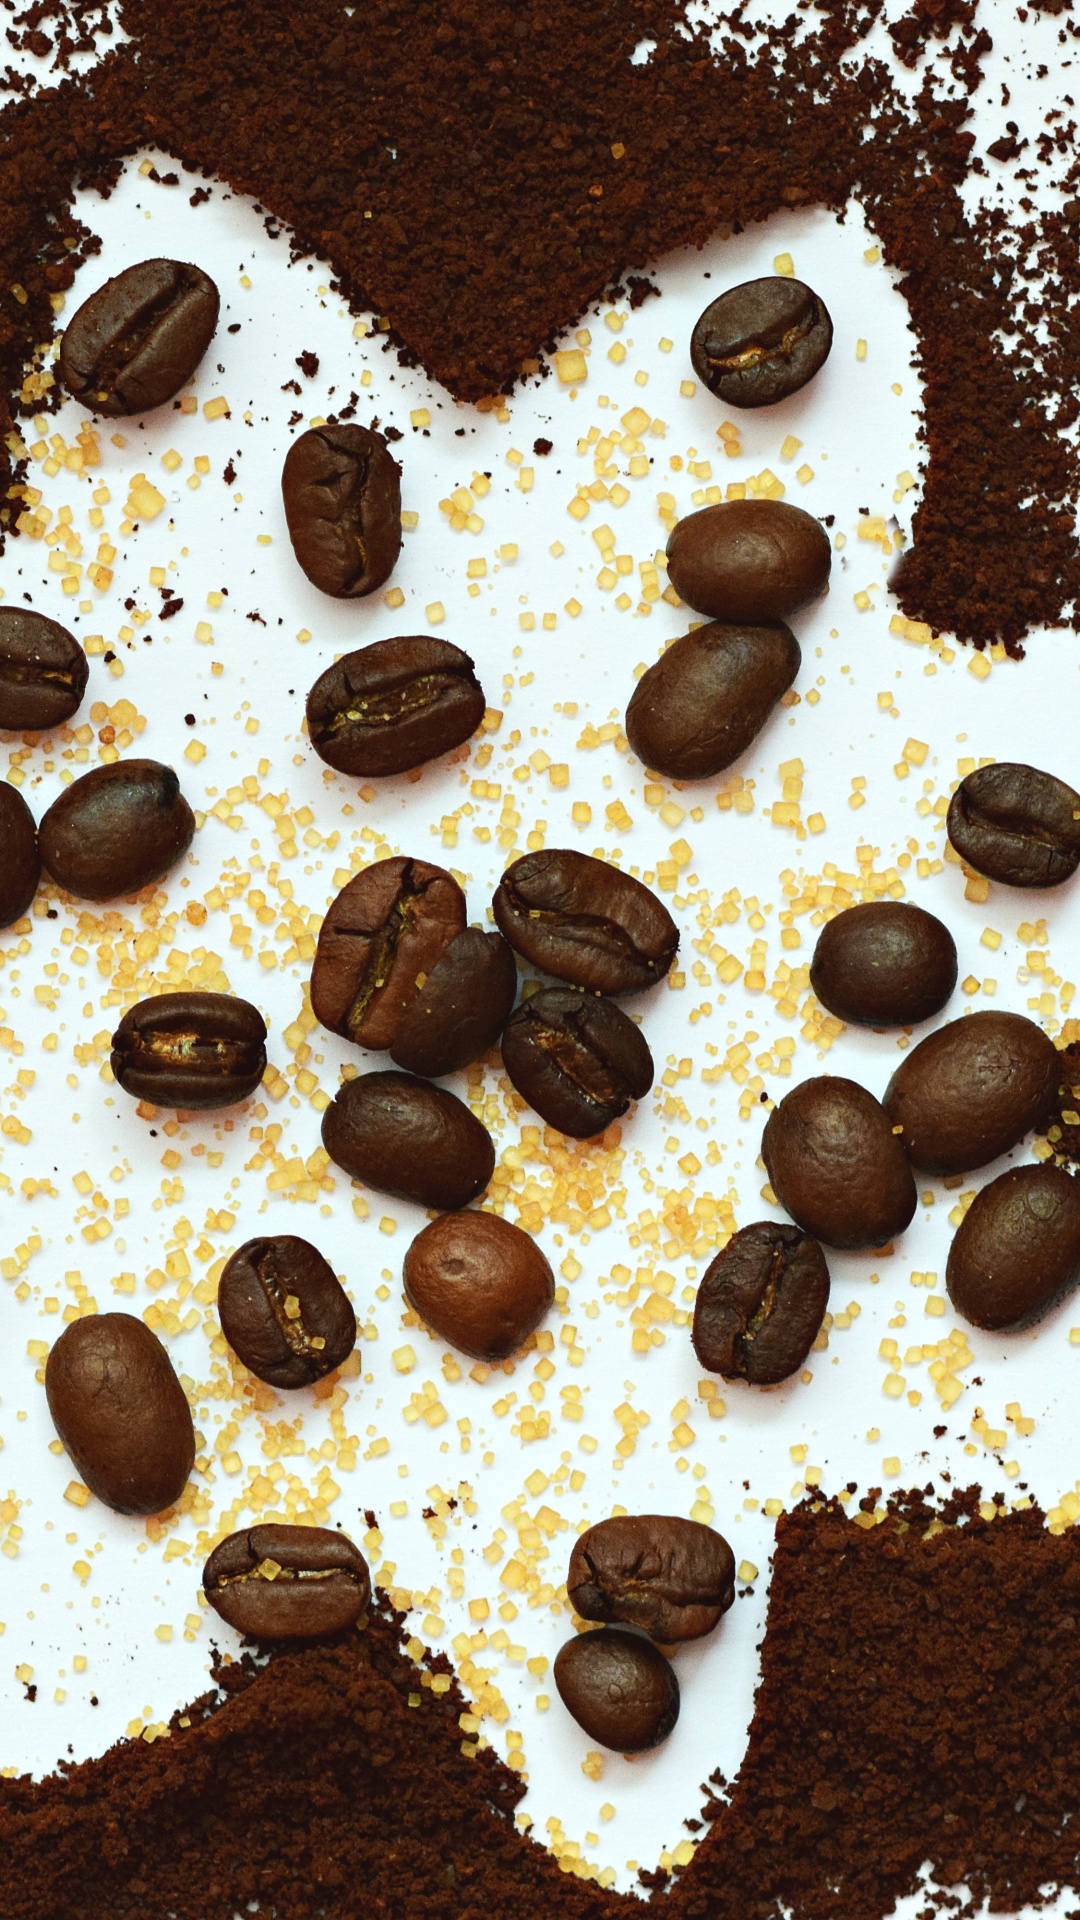 咖啡豆, 食品, 巧克力, 甜点, 巧克力芯片 壁纸 1080x1920 允许